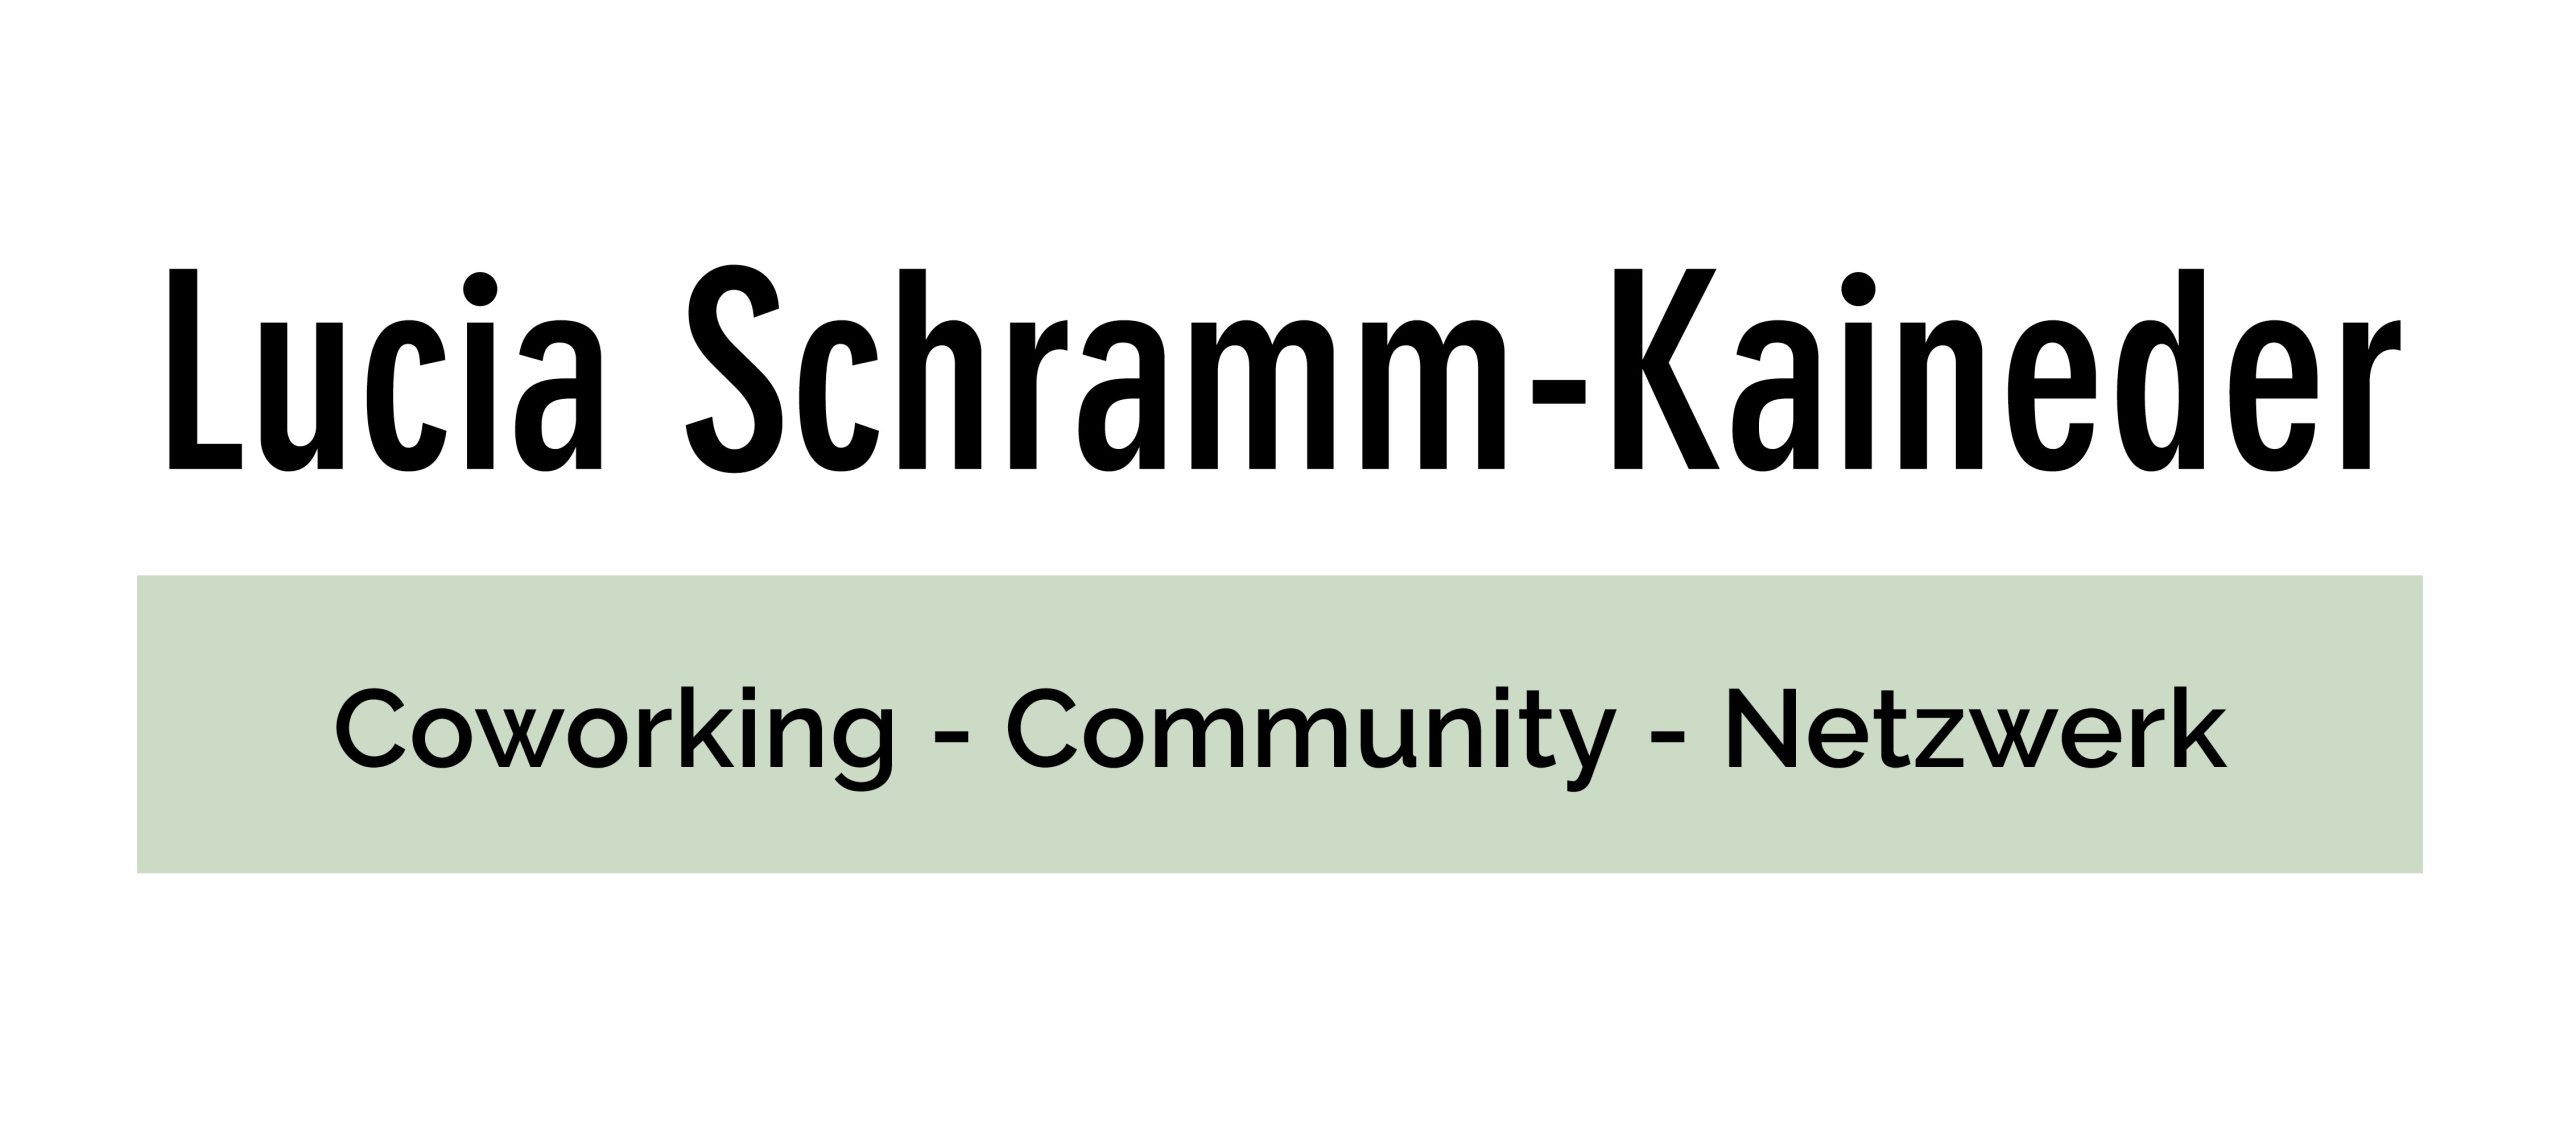 Lucia Schramm-Kaineder | WE GROW Building Communities